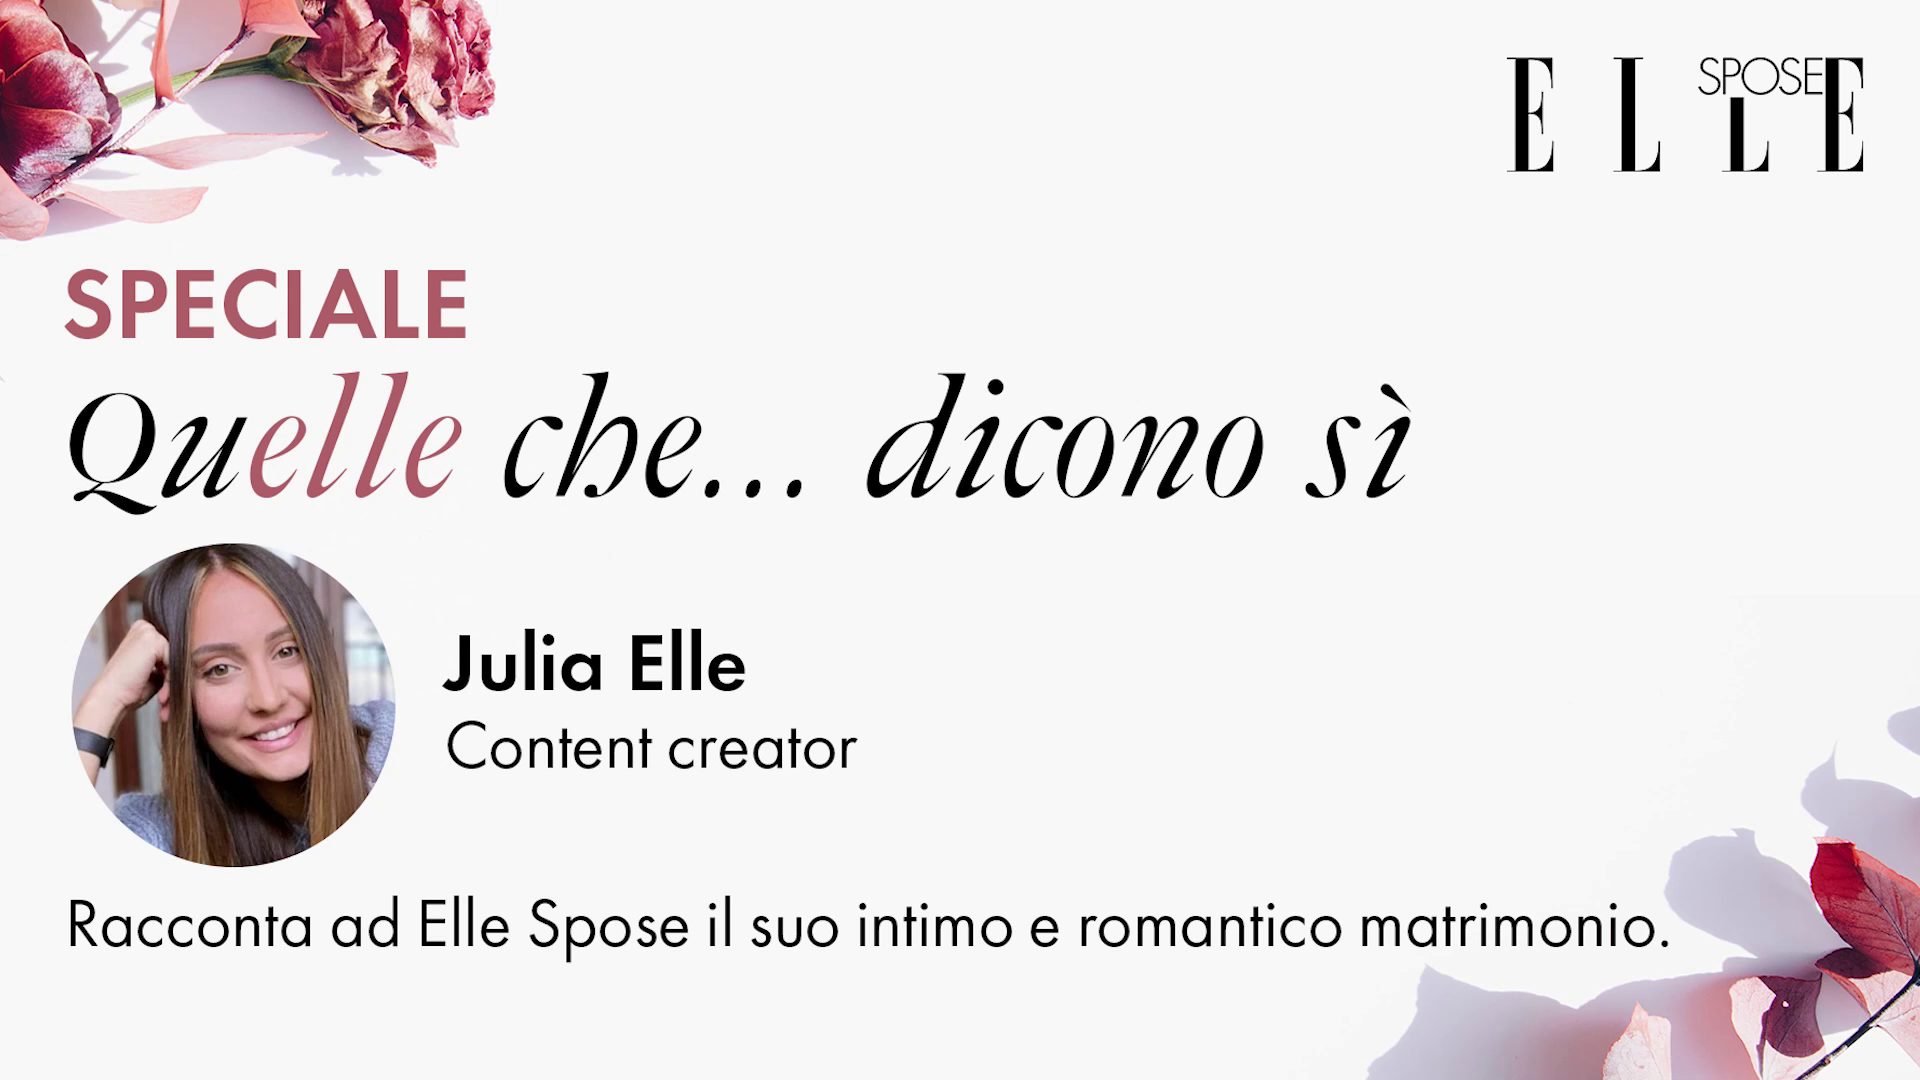 Julia Elle ci racconta il suo intimo e romantico matrimonio